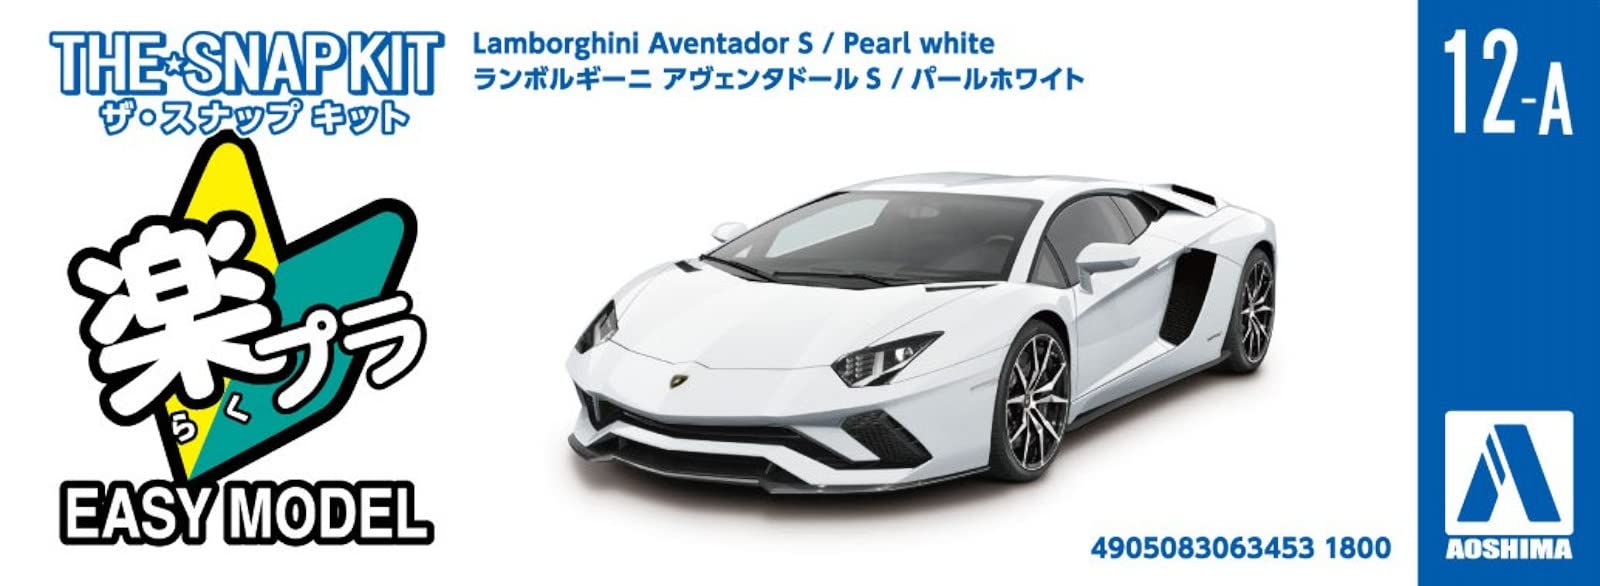 AOSHIMA The Snap Kit No.12-A 1/32 Lamborghini Aventador S Pearl White Plastic Model